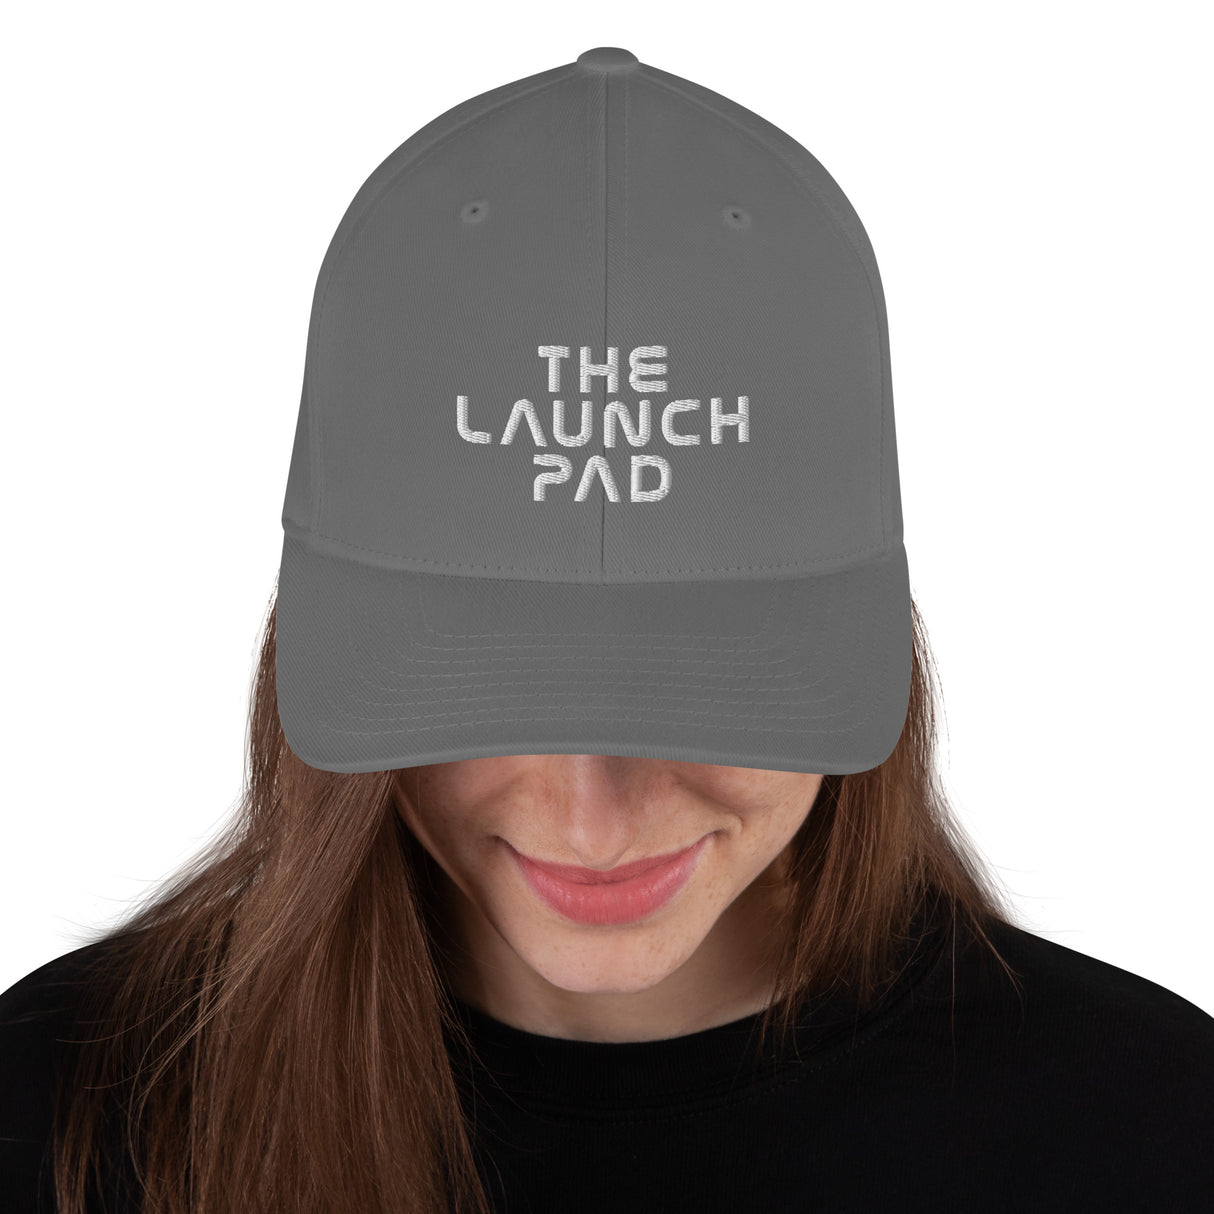 The Launch Pad Cap